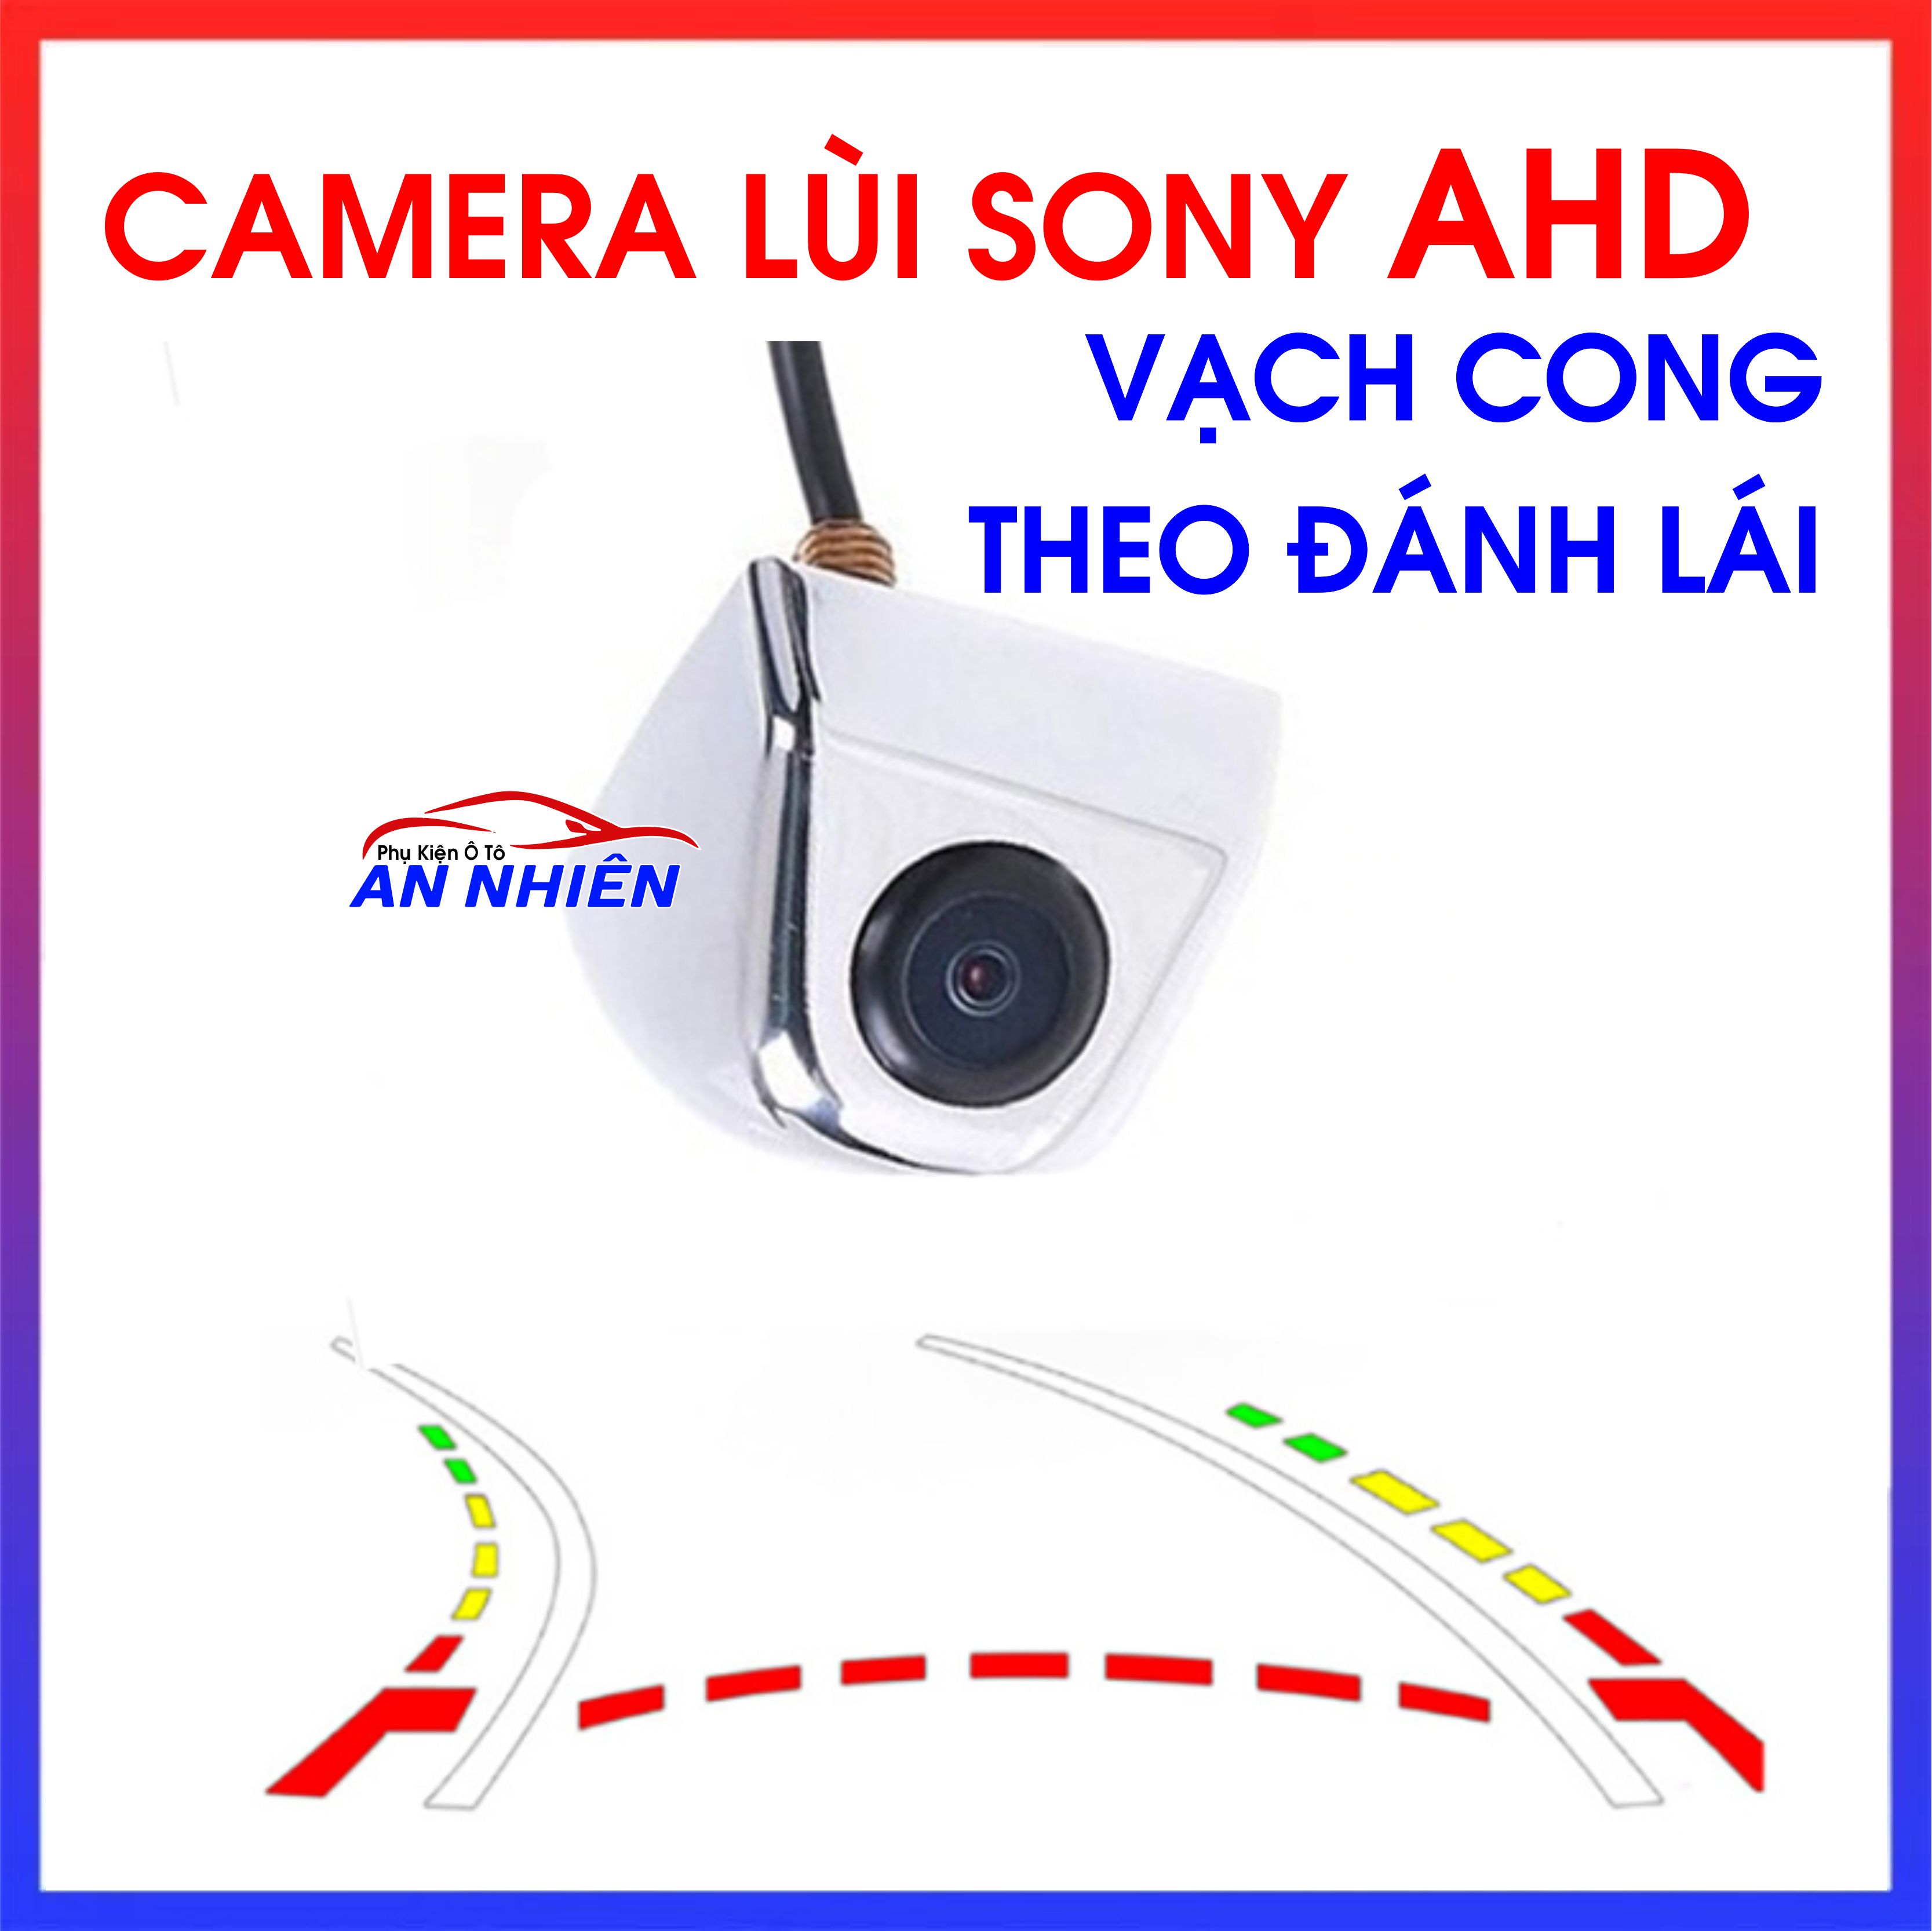 Camera Lùi AHD Vạch Cong Theo Góc Đánh Lái, Cam De AHD 170 Độ đánh lái theo vô lăng(Chỉ Dùng Cho Màn Hình Android)